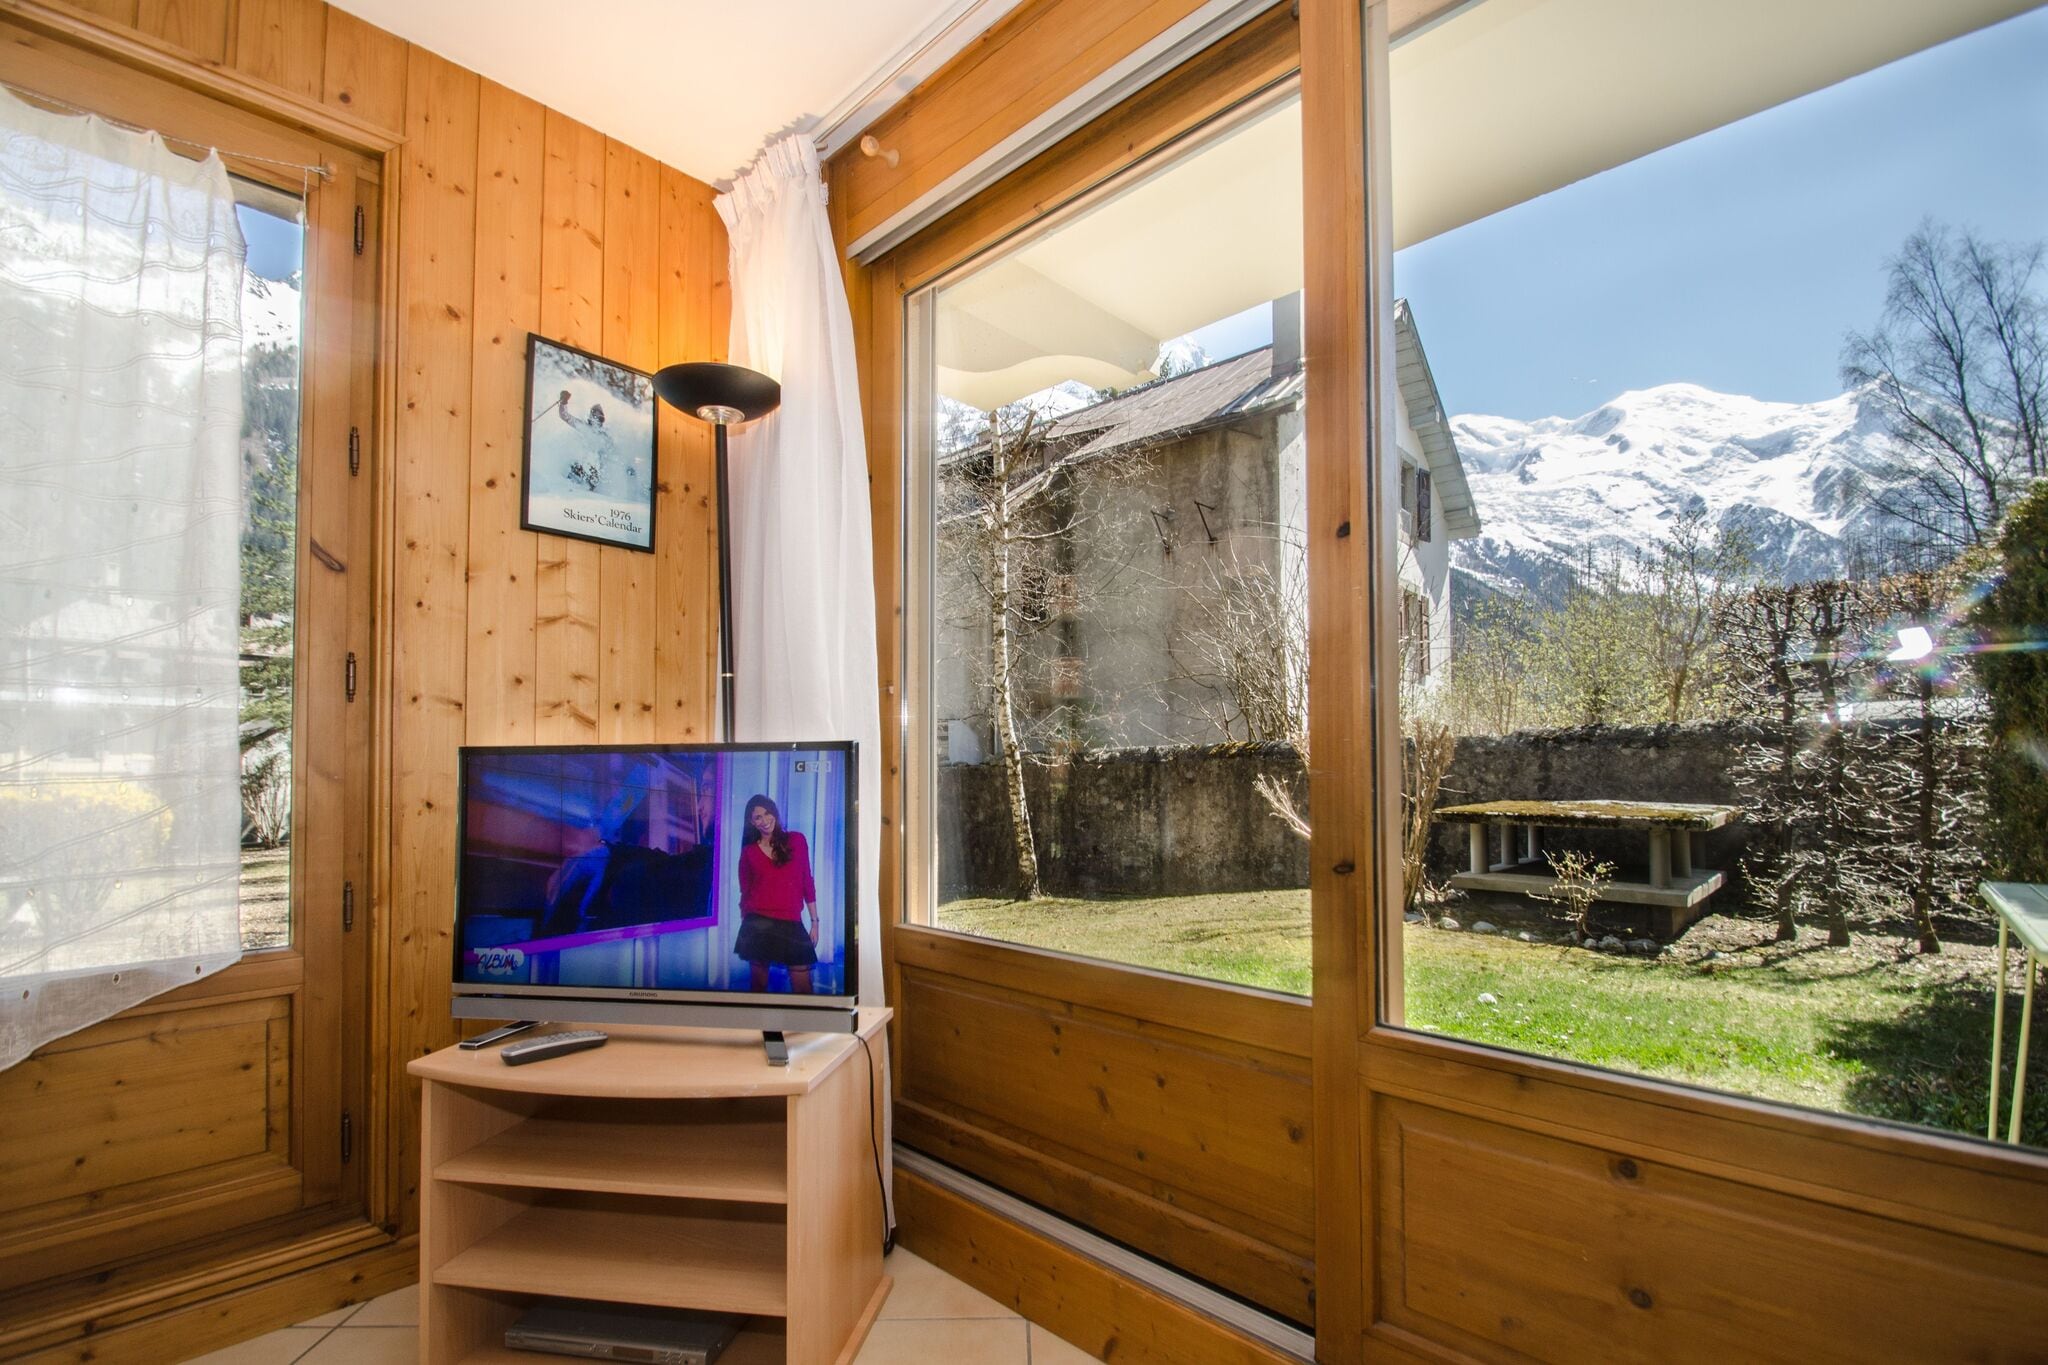 Moderne Ferienwohnung in Chamonix, Frankreich nahe Skilift